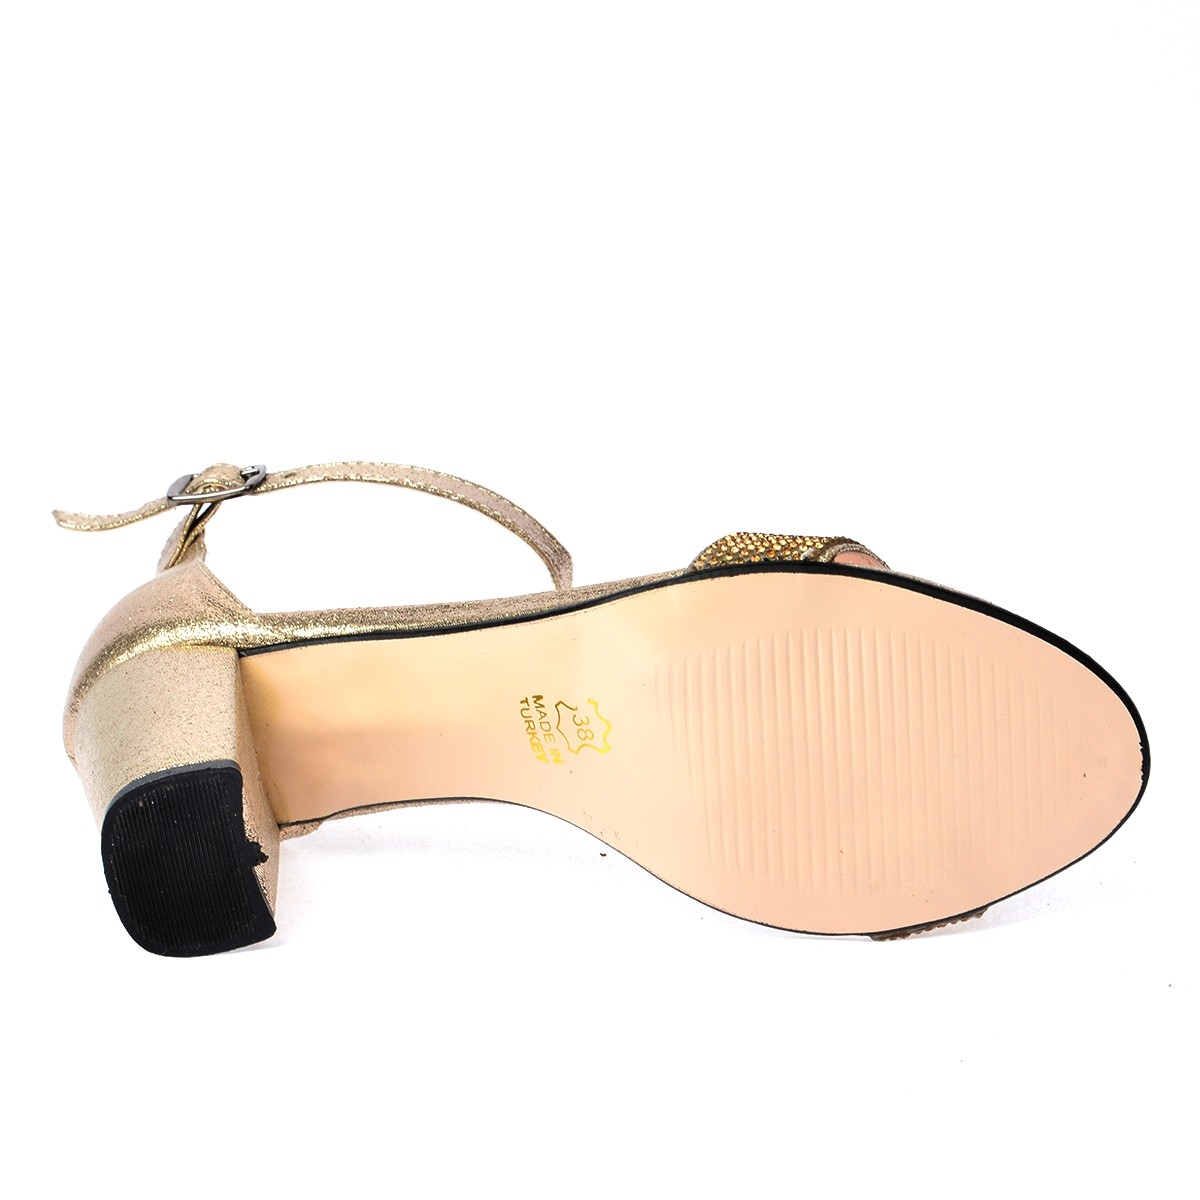 Flo 446-10 Taşlı 7 Cm Topuk Bayan Sandalet Ayakkabı ALTIN. 1